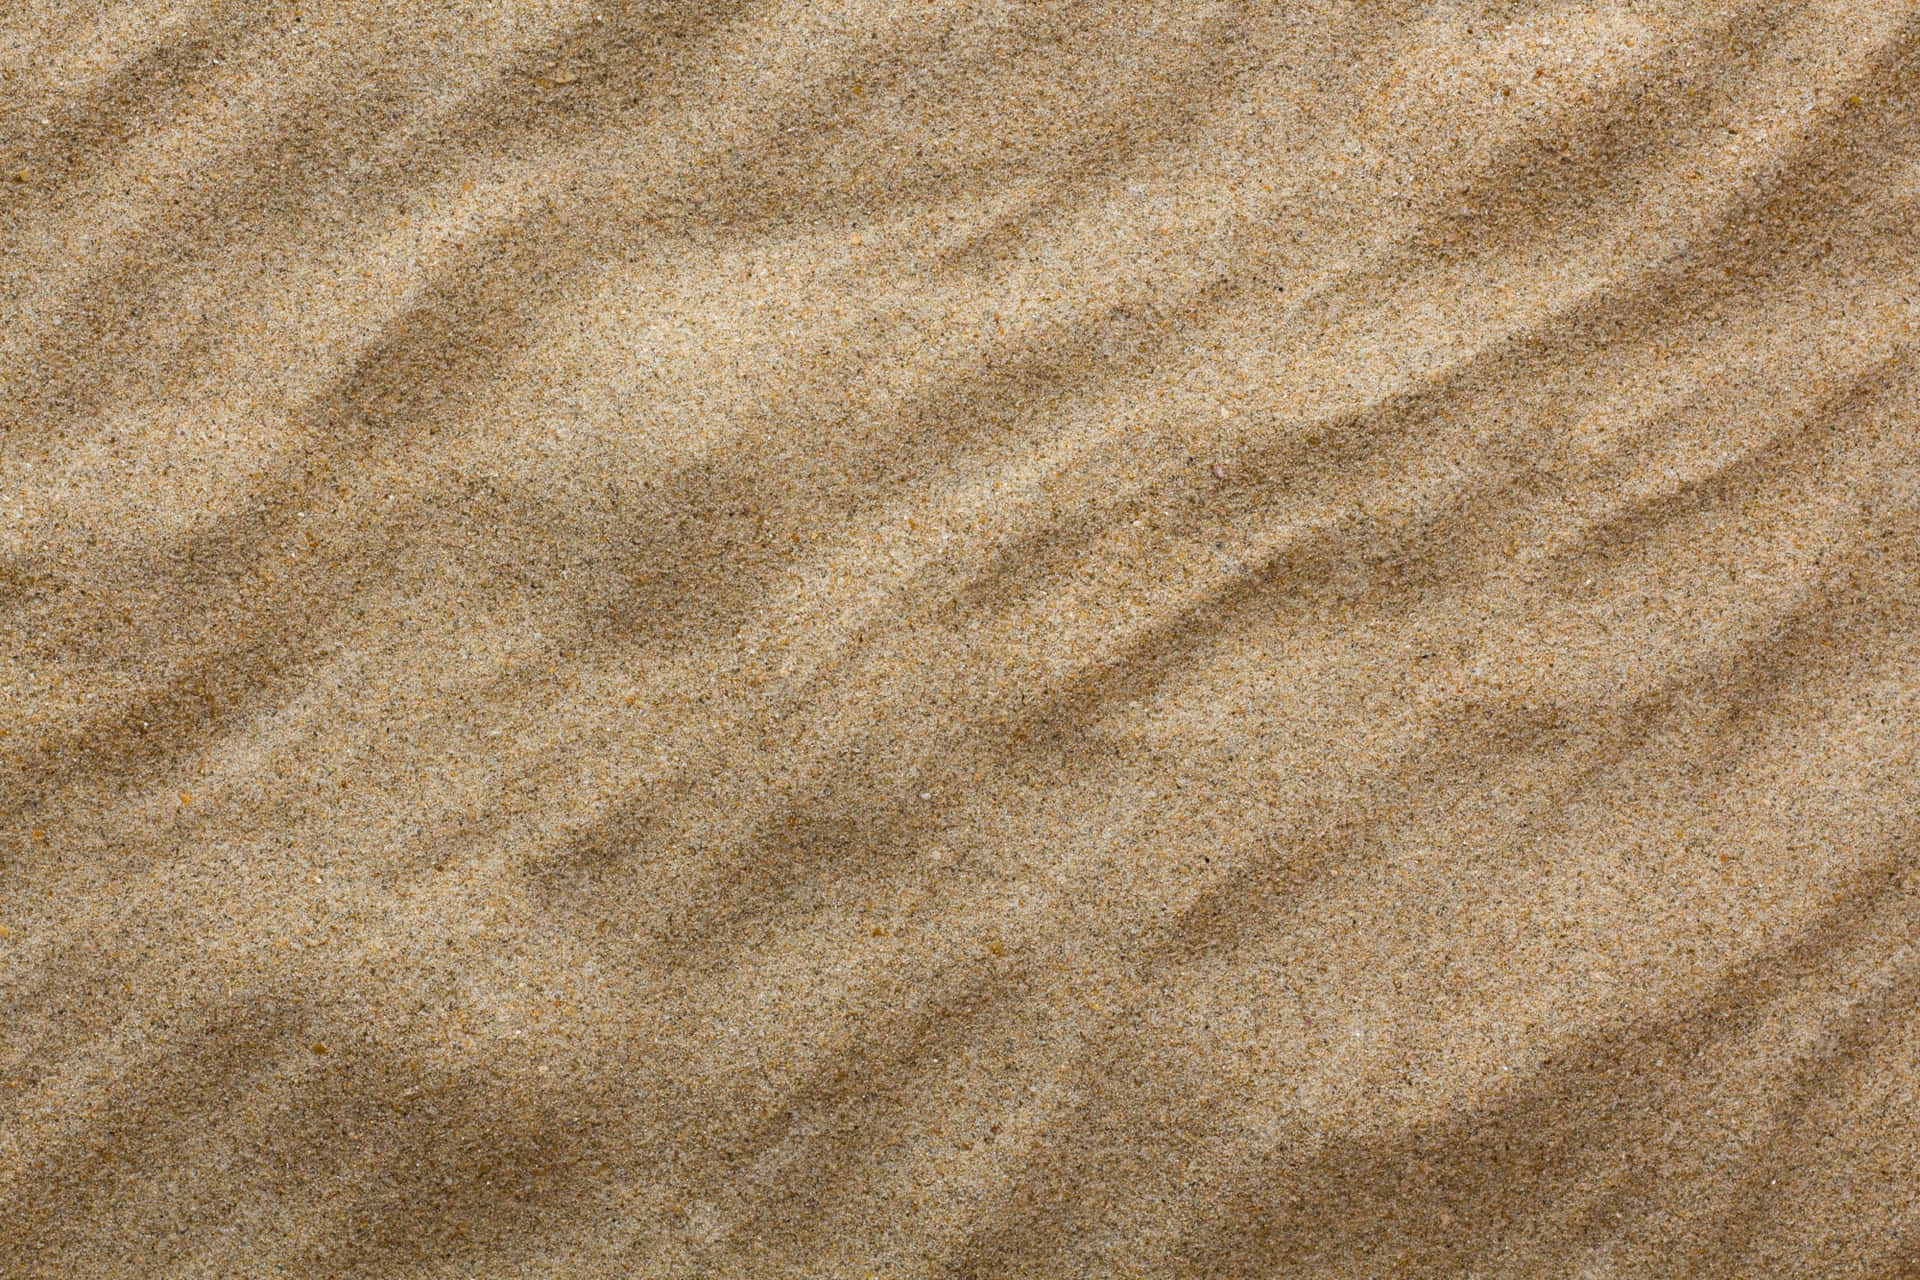 A desert filled with shimmering golden sand